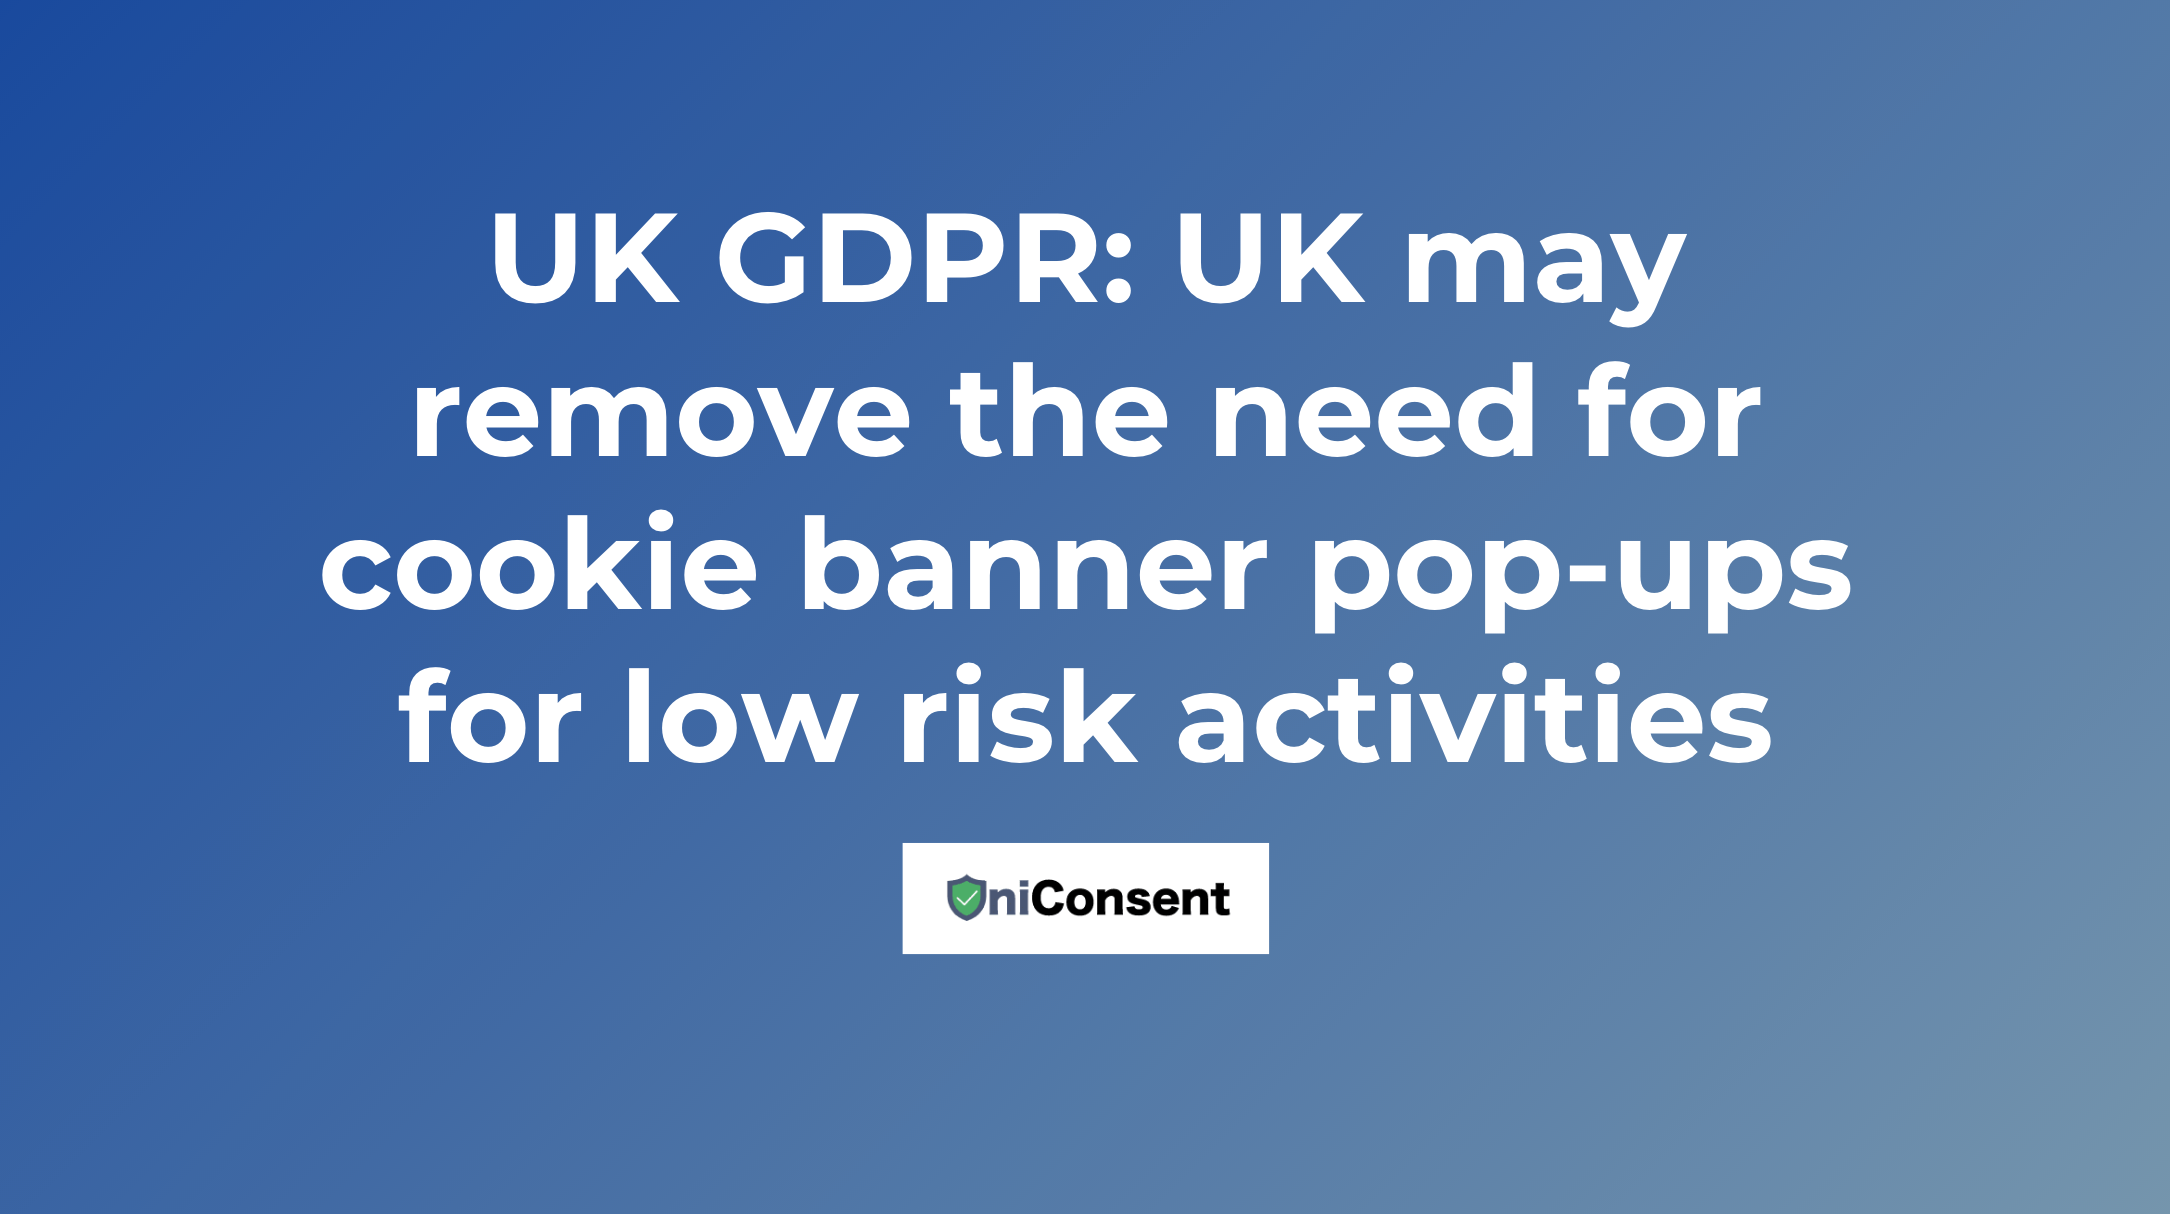 英国GDPR：英国可能会取消低风险活动的cookie横幅弹窗需求